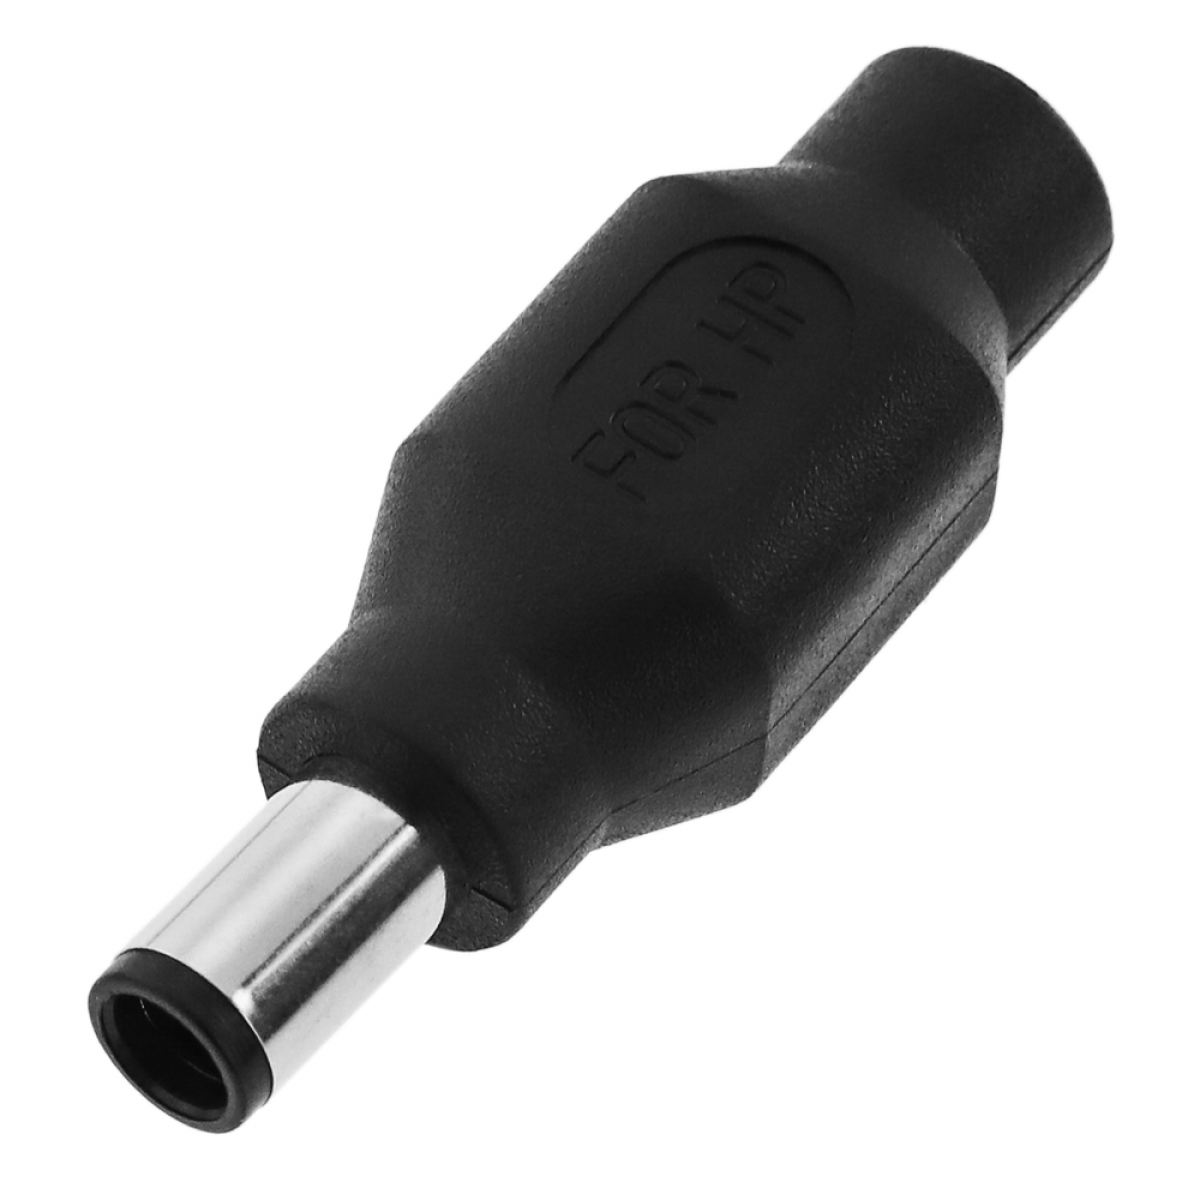 Bematik - Universal Power Jack Adaptateur 2.1 x 5.5 mm à 5 x 7.4 mm - Accessoires alimentation